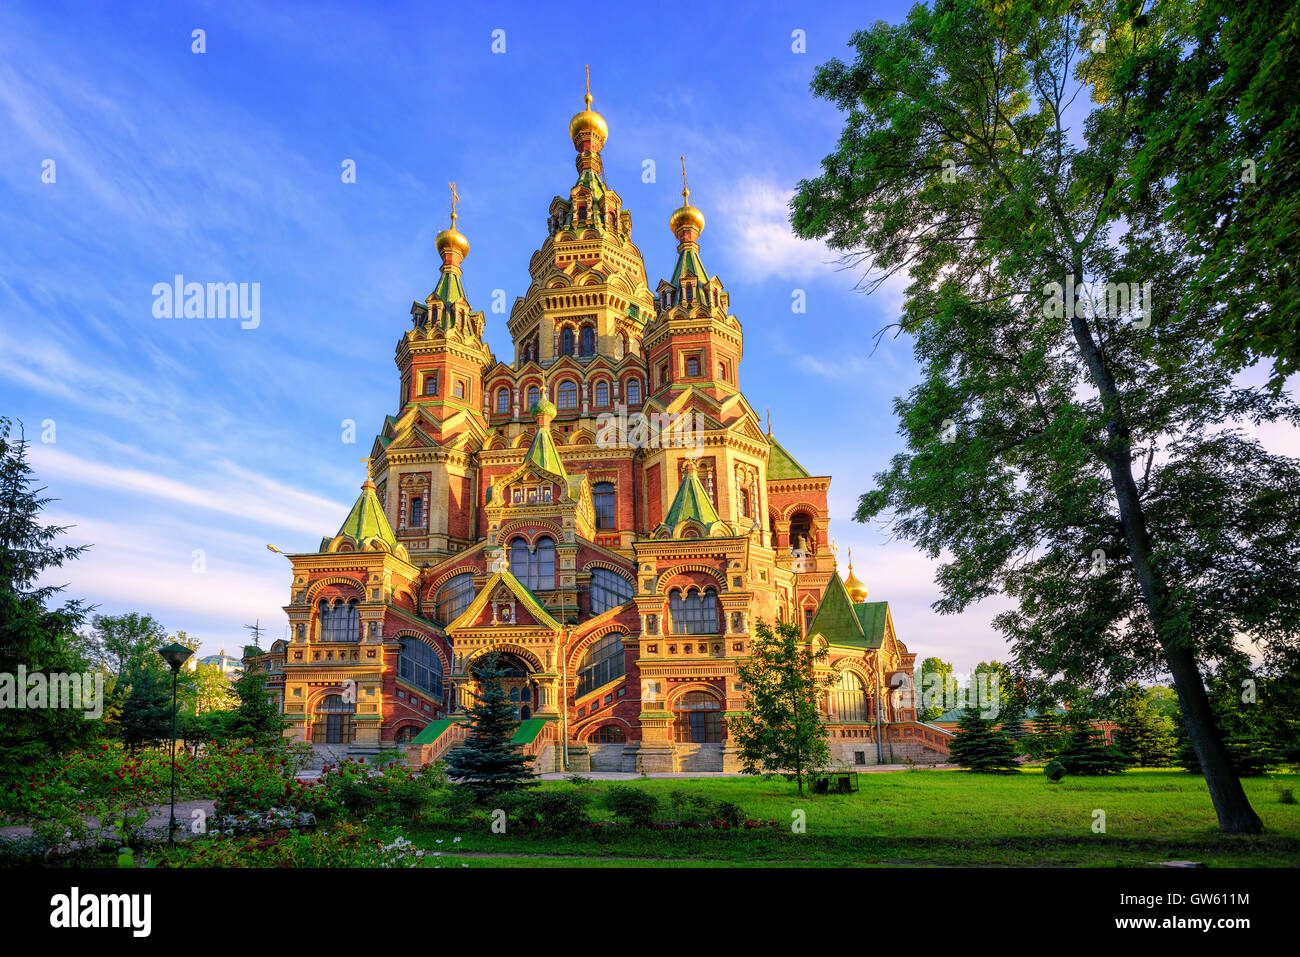 Catedral de San Pedro y san Pablo es una iglesia ortodoxa rusa tradicional, Peterhof, San Petersburgo, Rusia Foto de stock